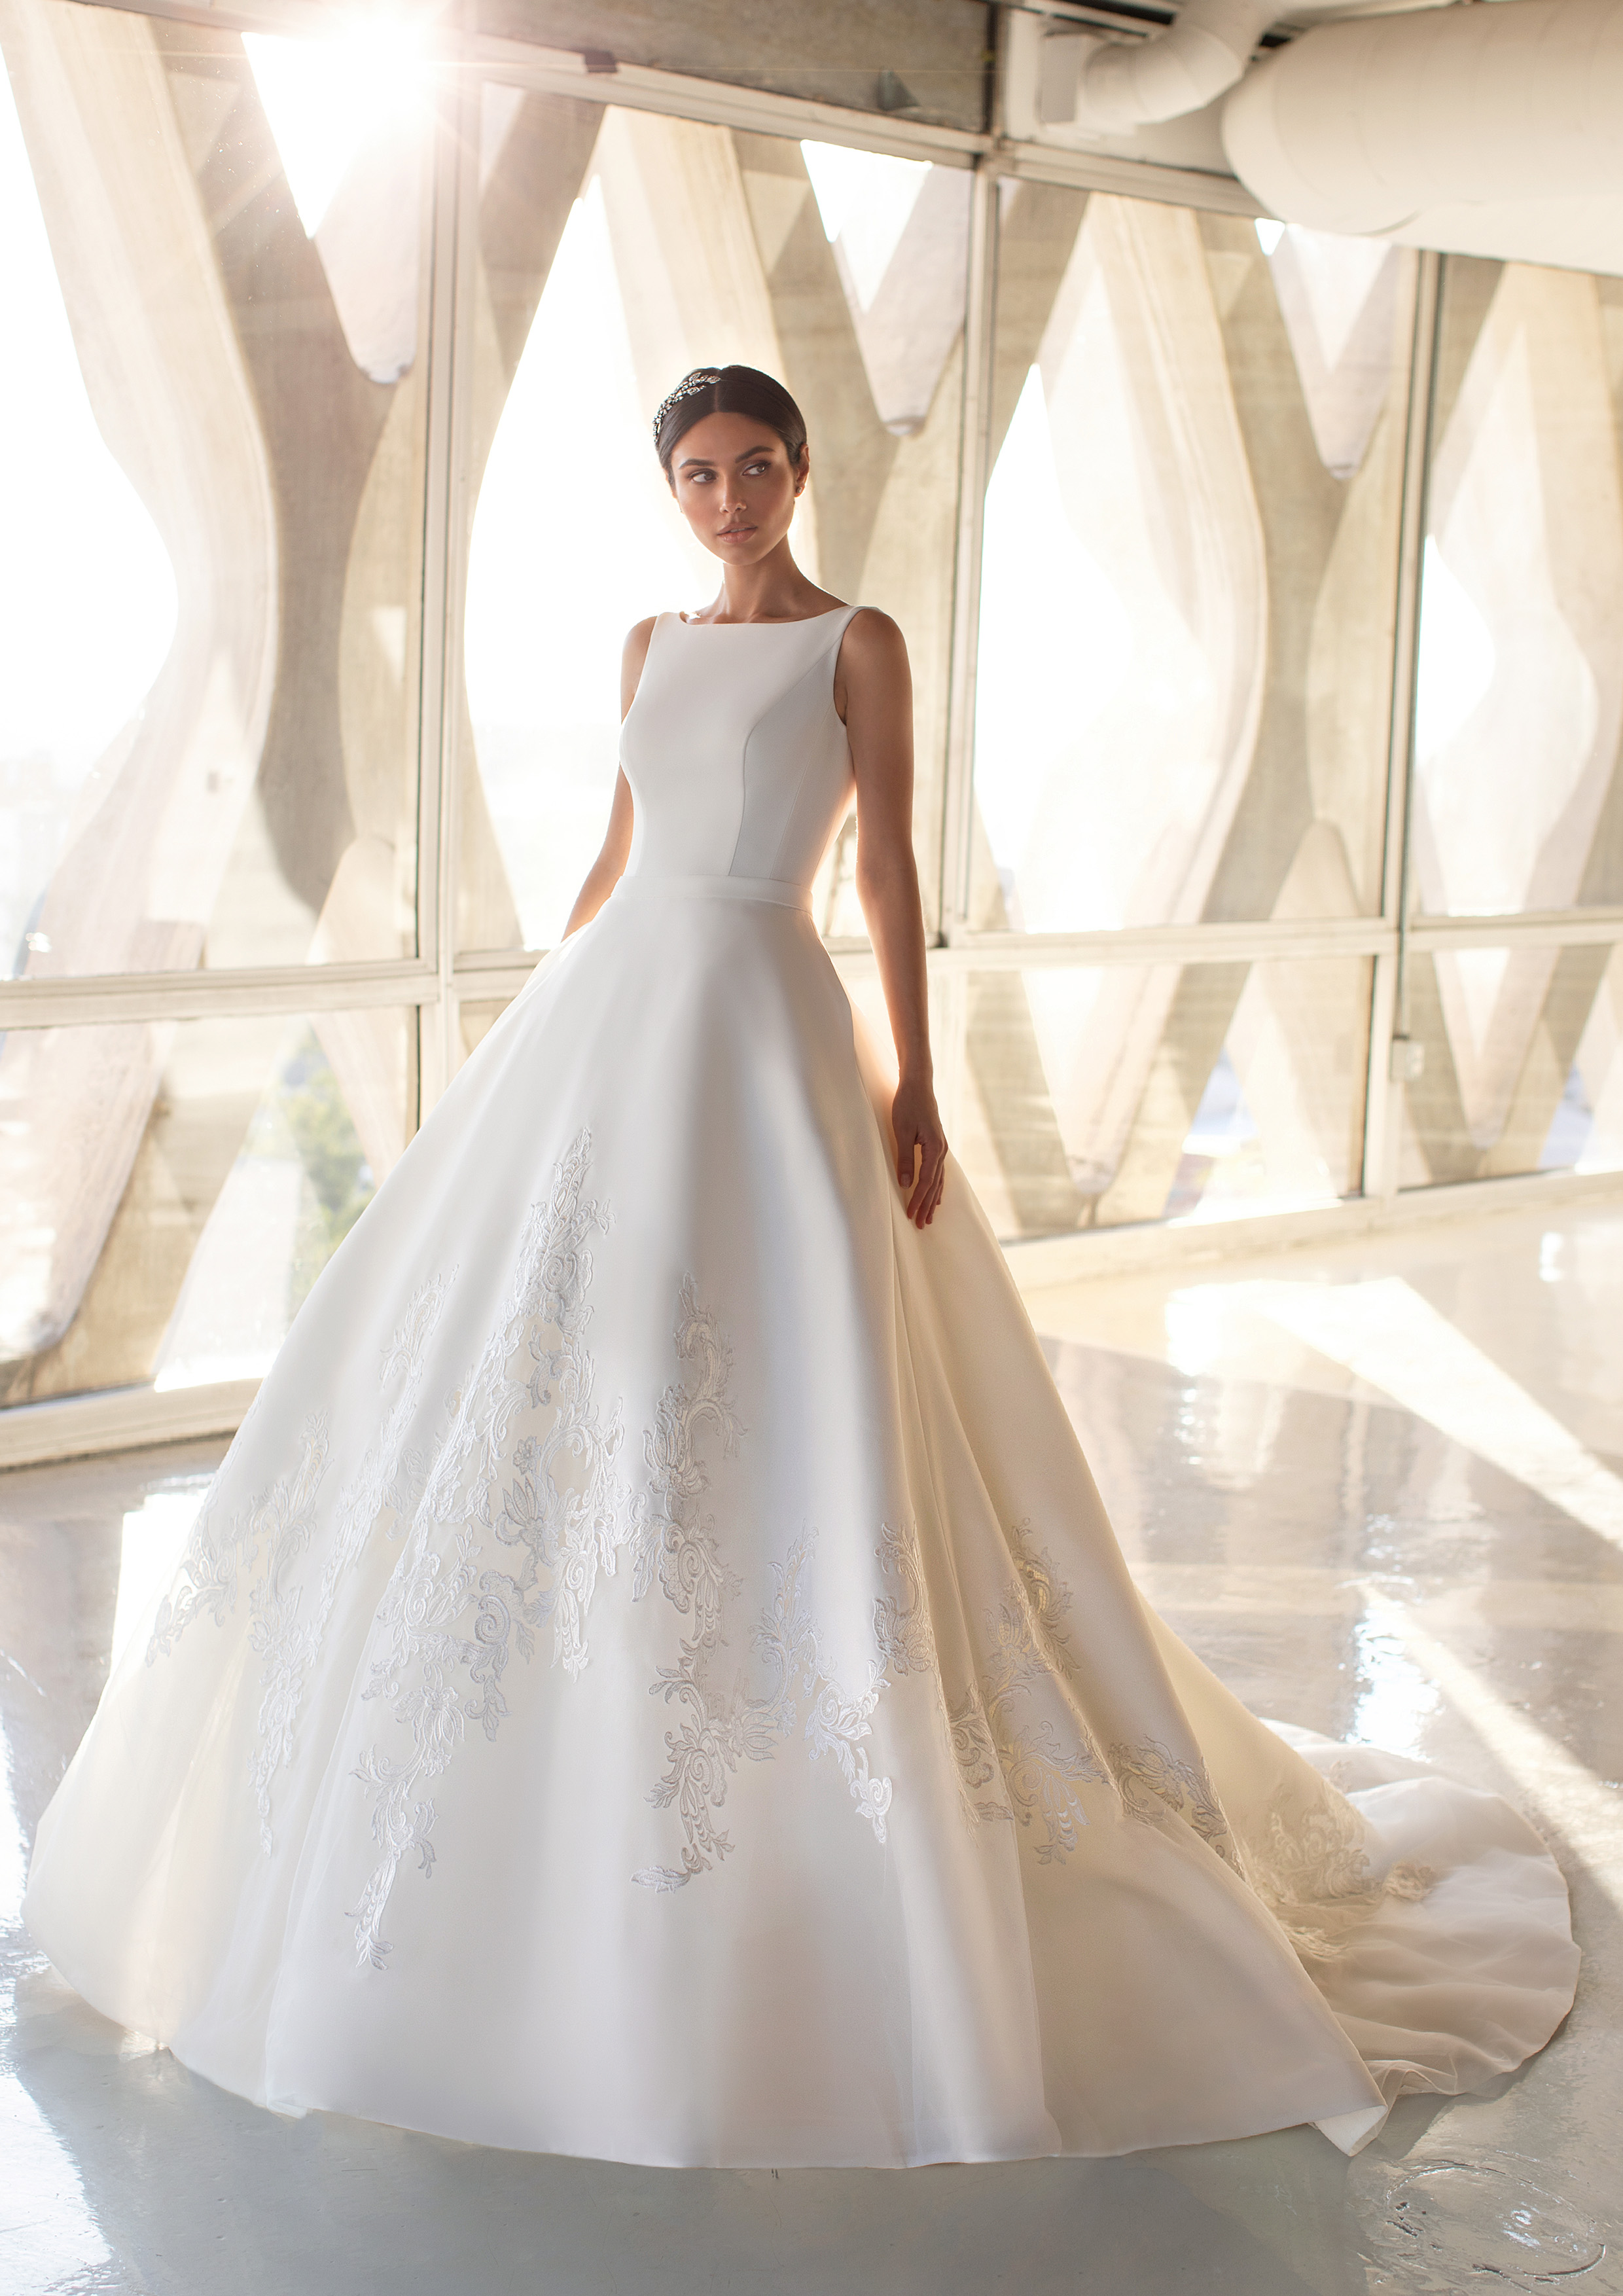 Vestido de noiva corte princesa com bordados na bainha | Modelo Greeen de Pronovias 2021 Cruise Collection